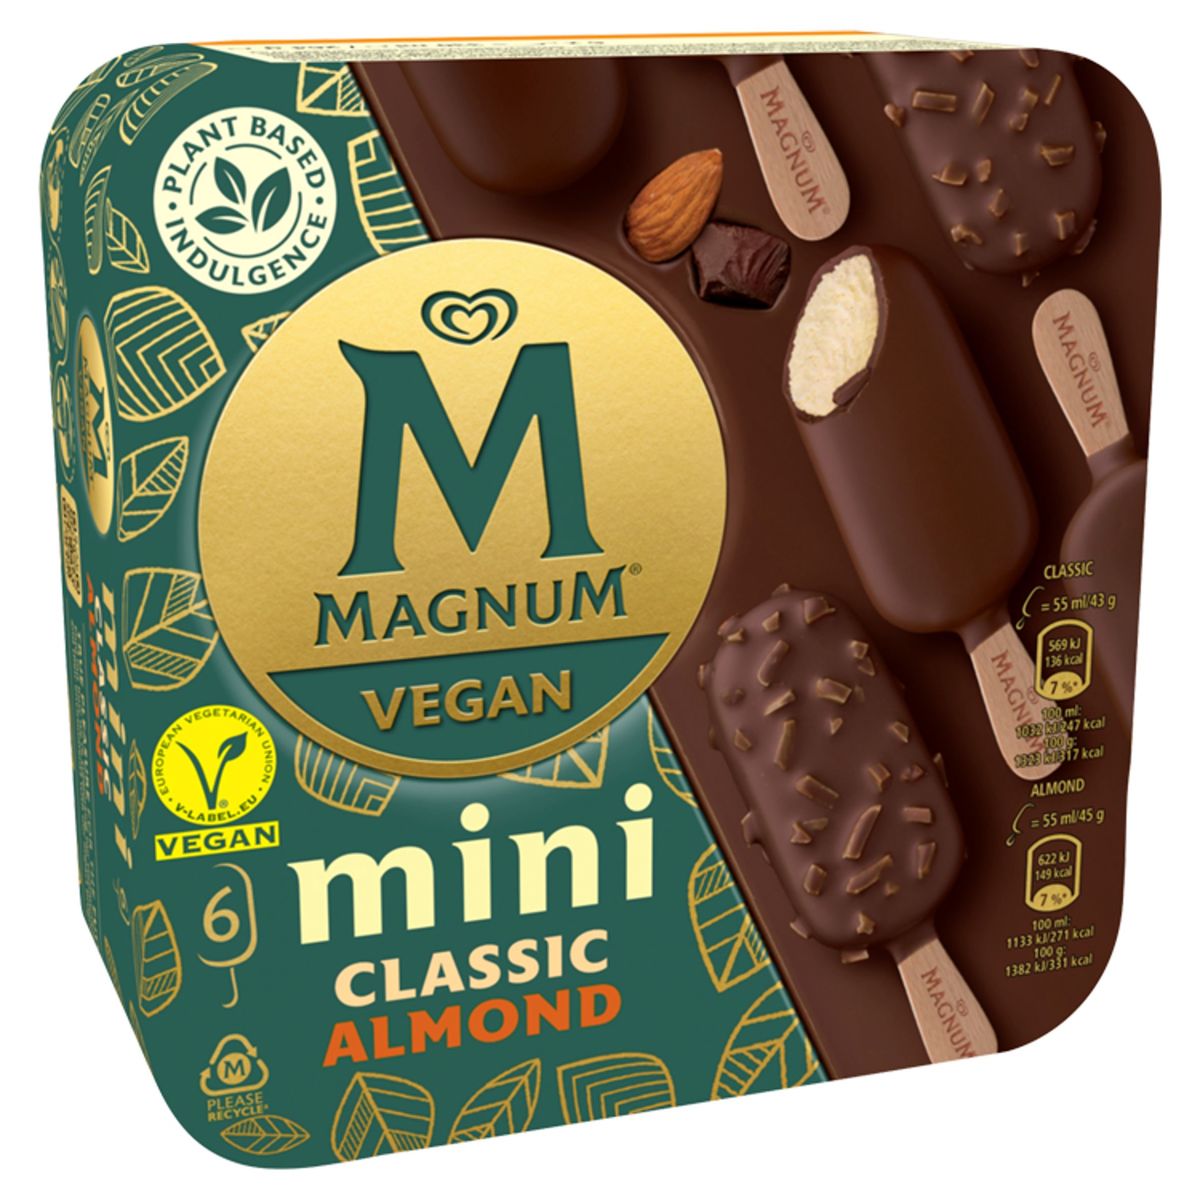 Magnum Ola Ijs Vegan Classic Almond Mini Multipack6 x 55 ml